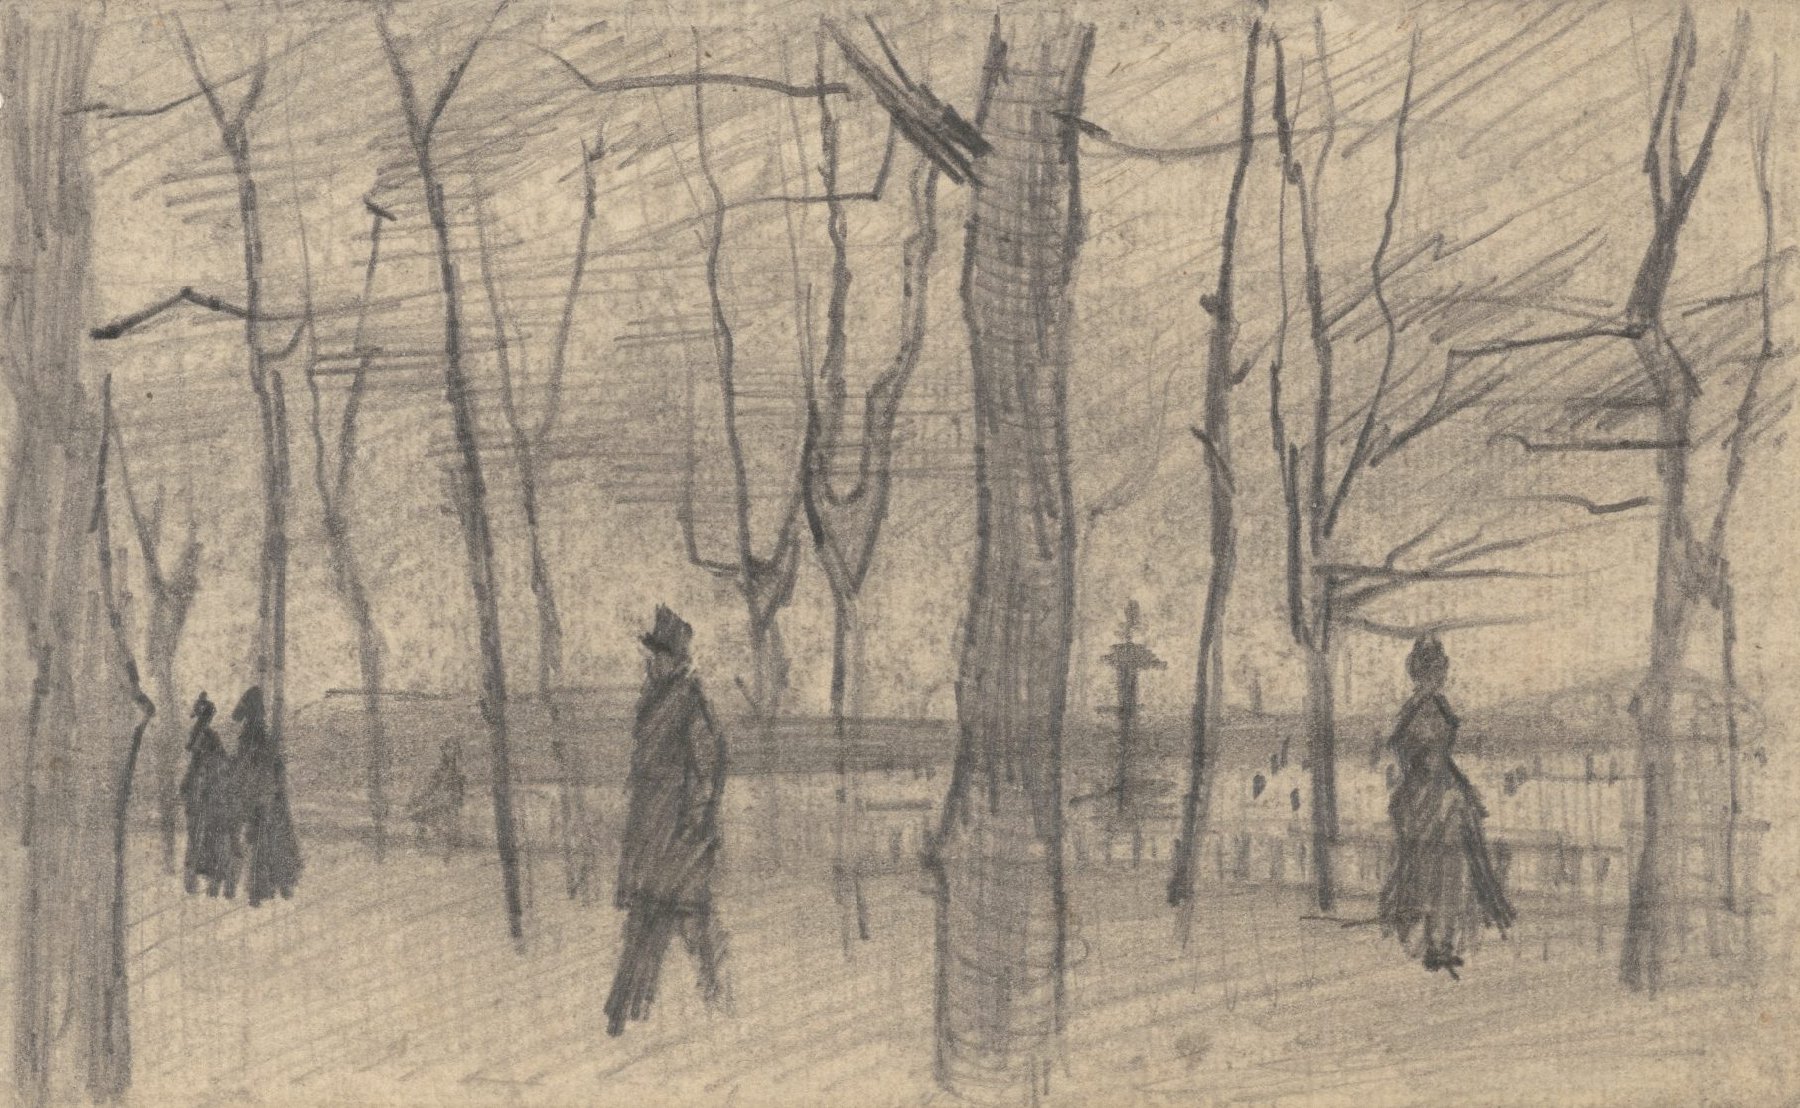 Jardin du Luxembourg Vincent van Gogh (1853 - 1890), Parijs, maart-april 1886